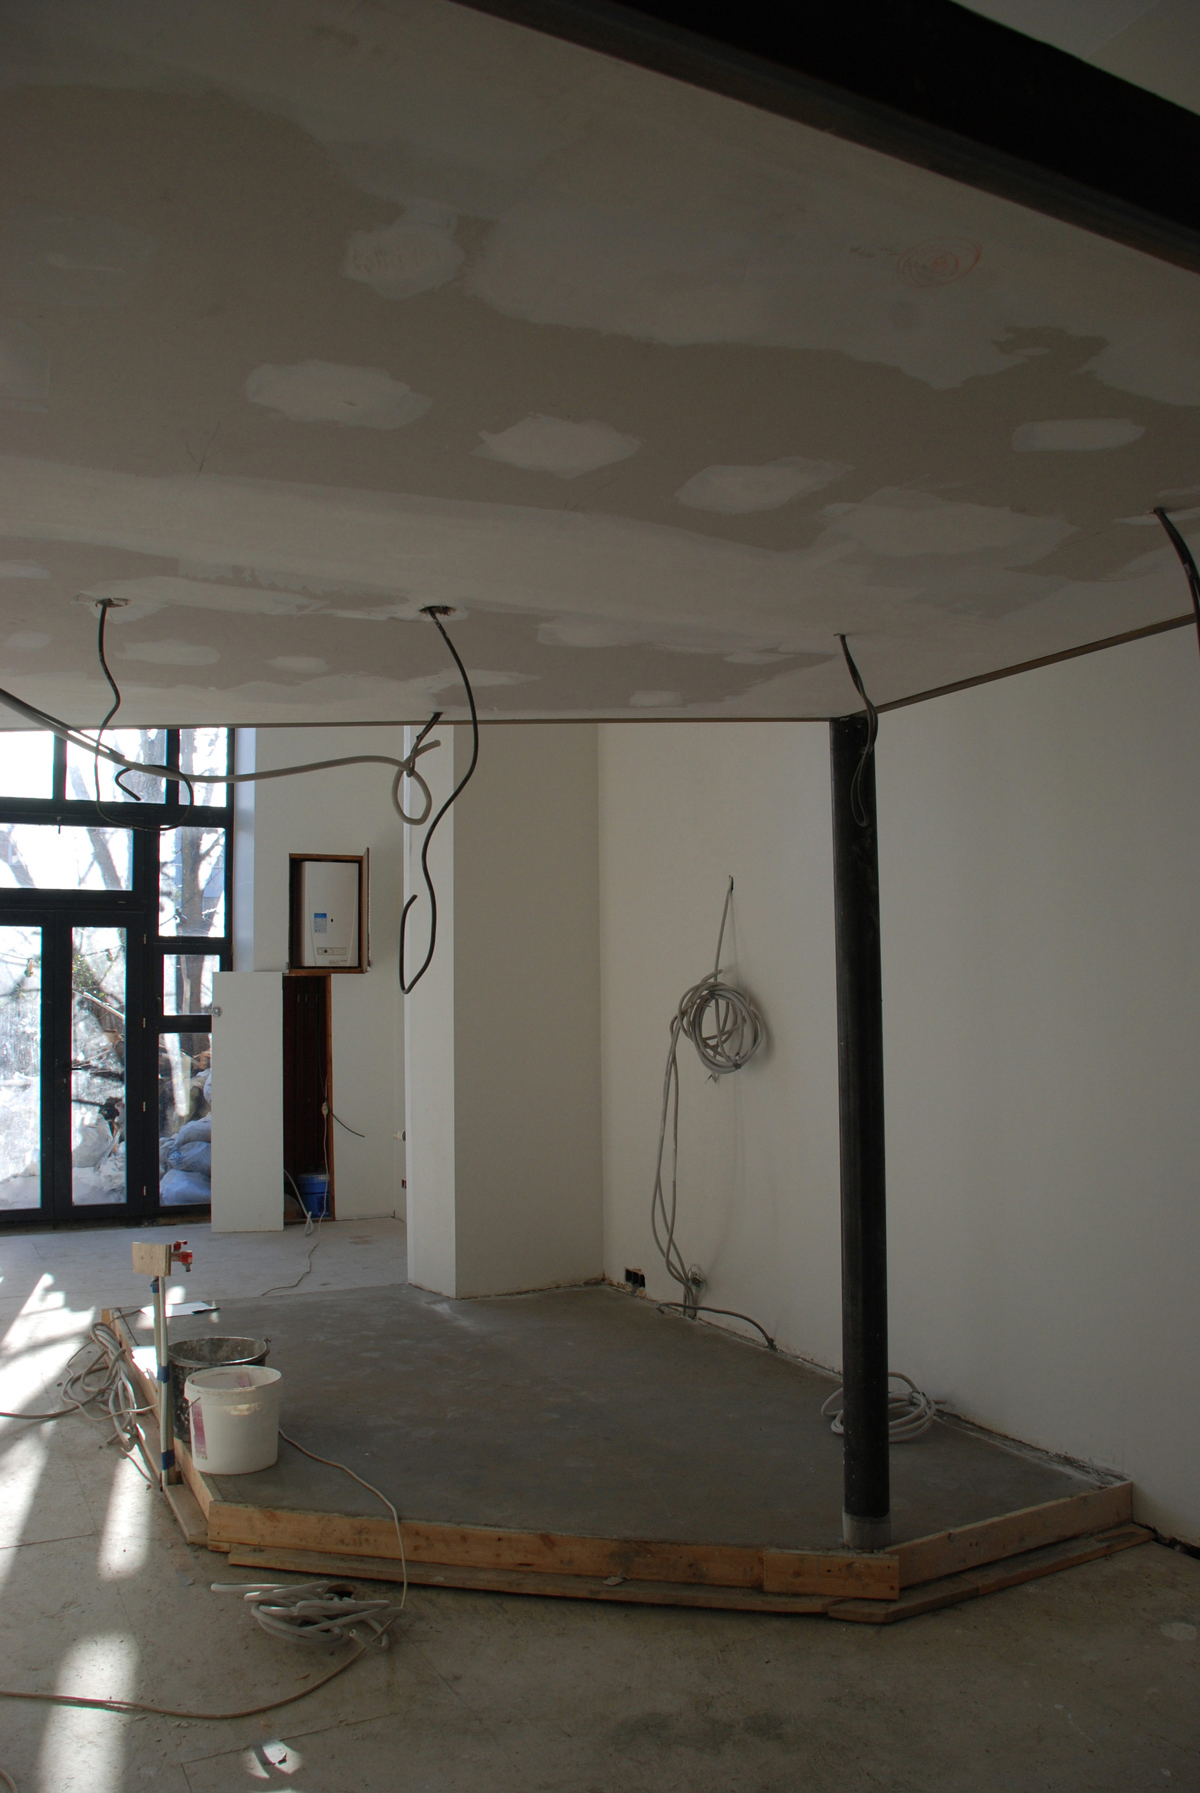 en cours de chantier : en dessous de la mezzanine, vue vers la cuisine et le béton de sol en cours de séchage